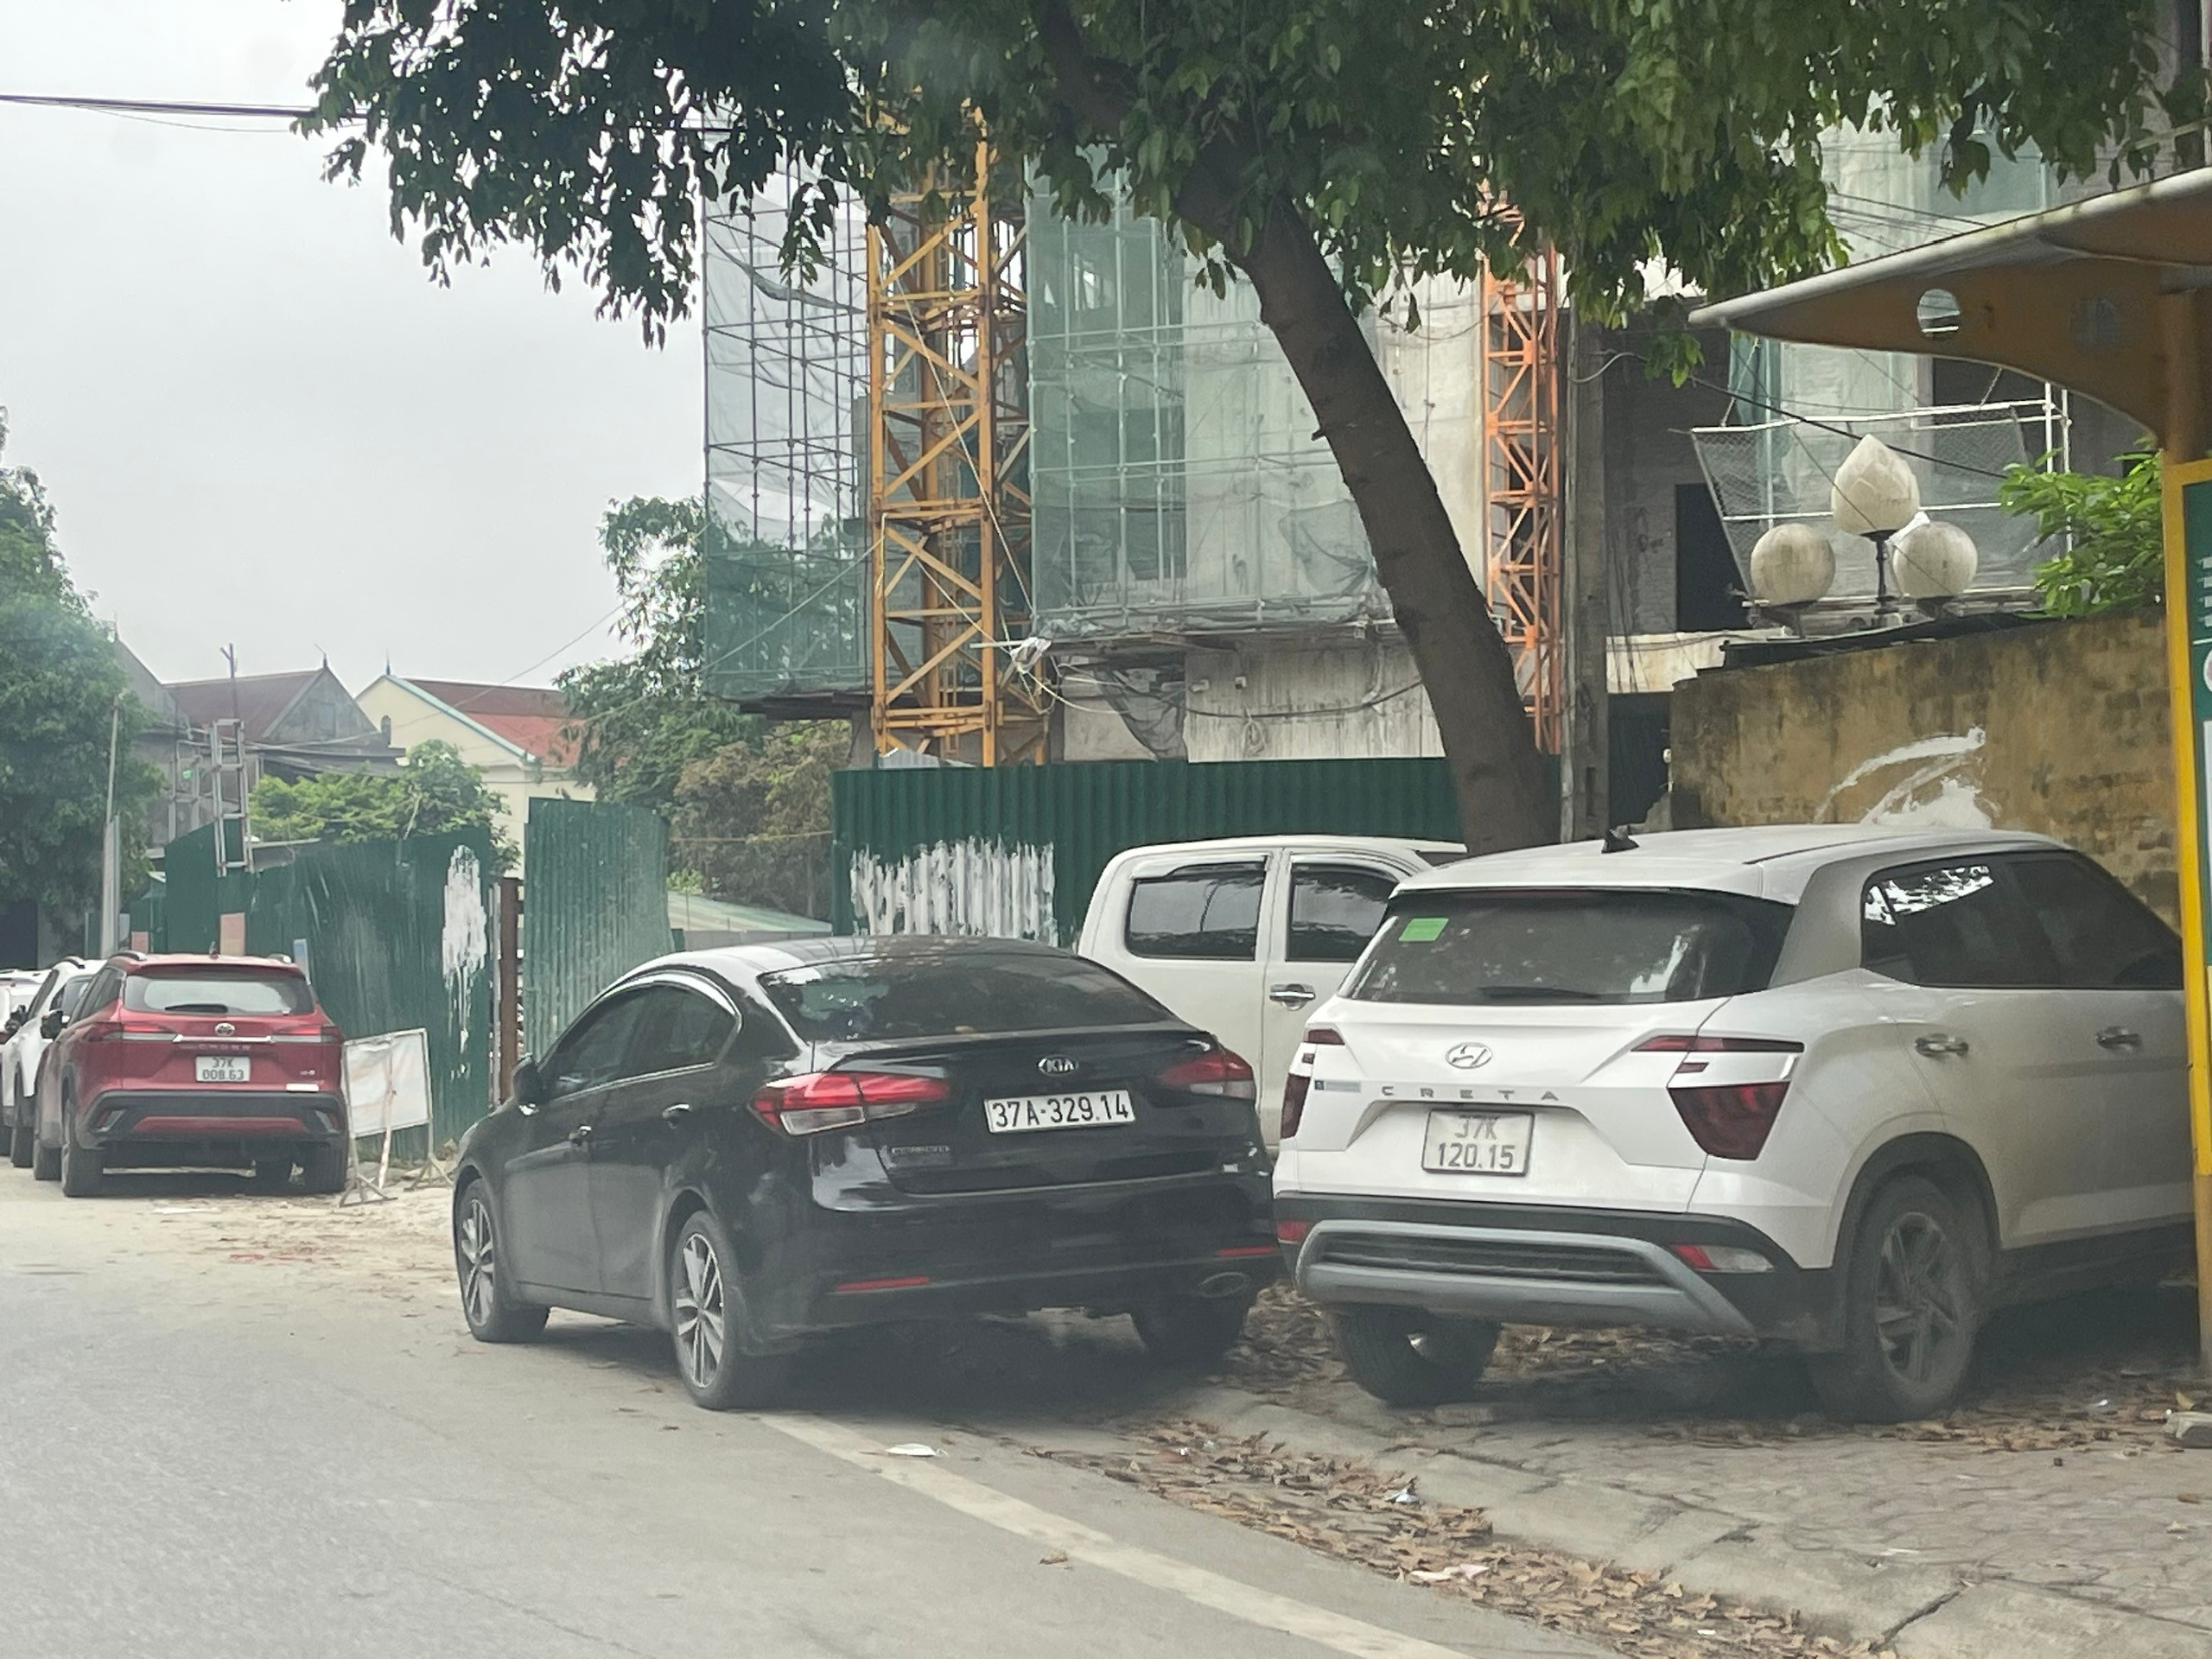 BNA_Xe ô tô chen chúc đậu trên đường Tôn Thất Tùng đoạn gần cổng phụ Bệnh viện Sản nhi Nghệ An. Ảnh Tiến Đông.jpg